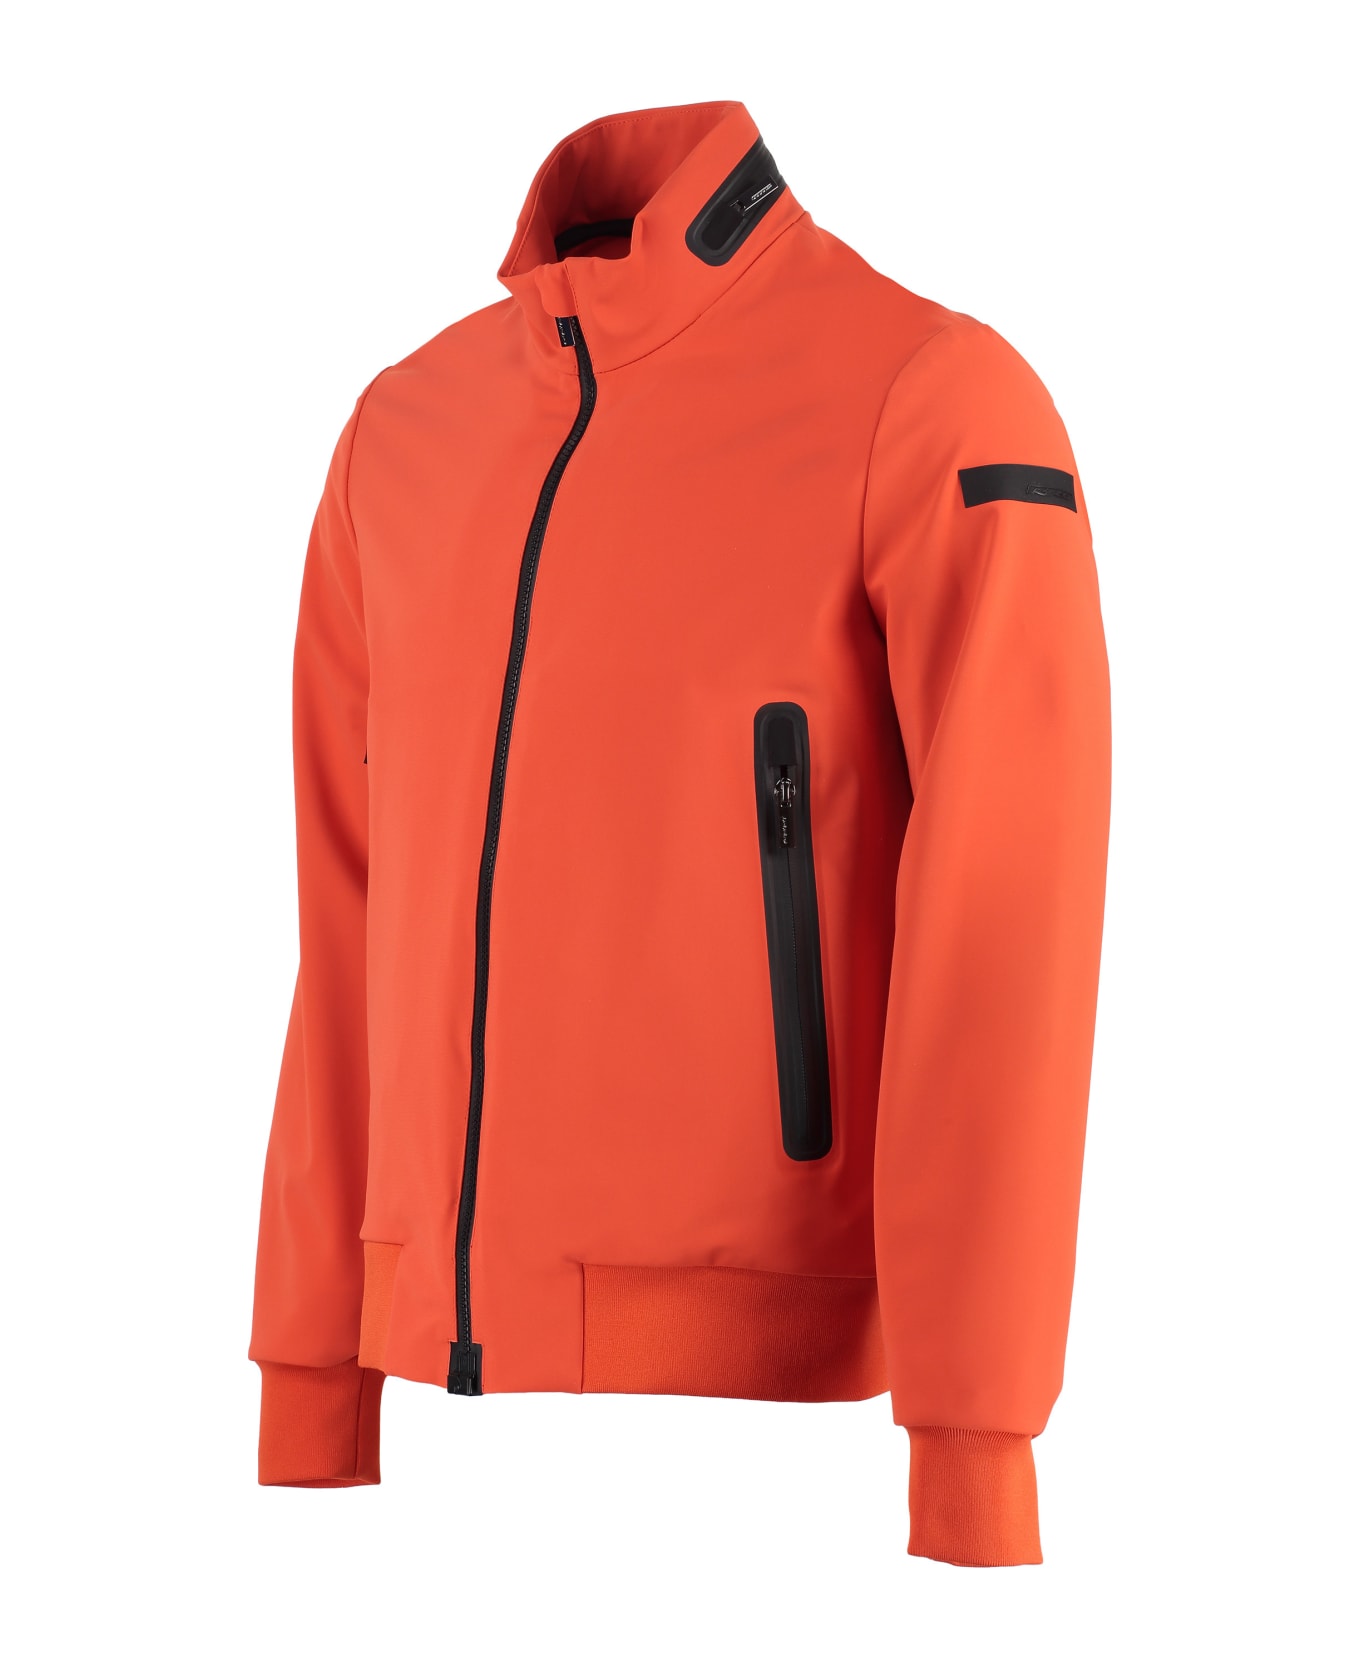 RRD - Roberto Ricci Design Techno Fabric Jacket - Orange レインコート